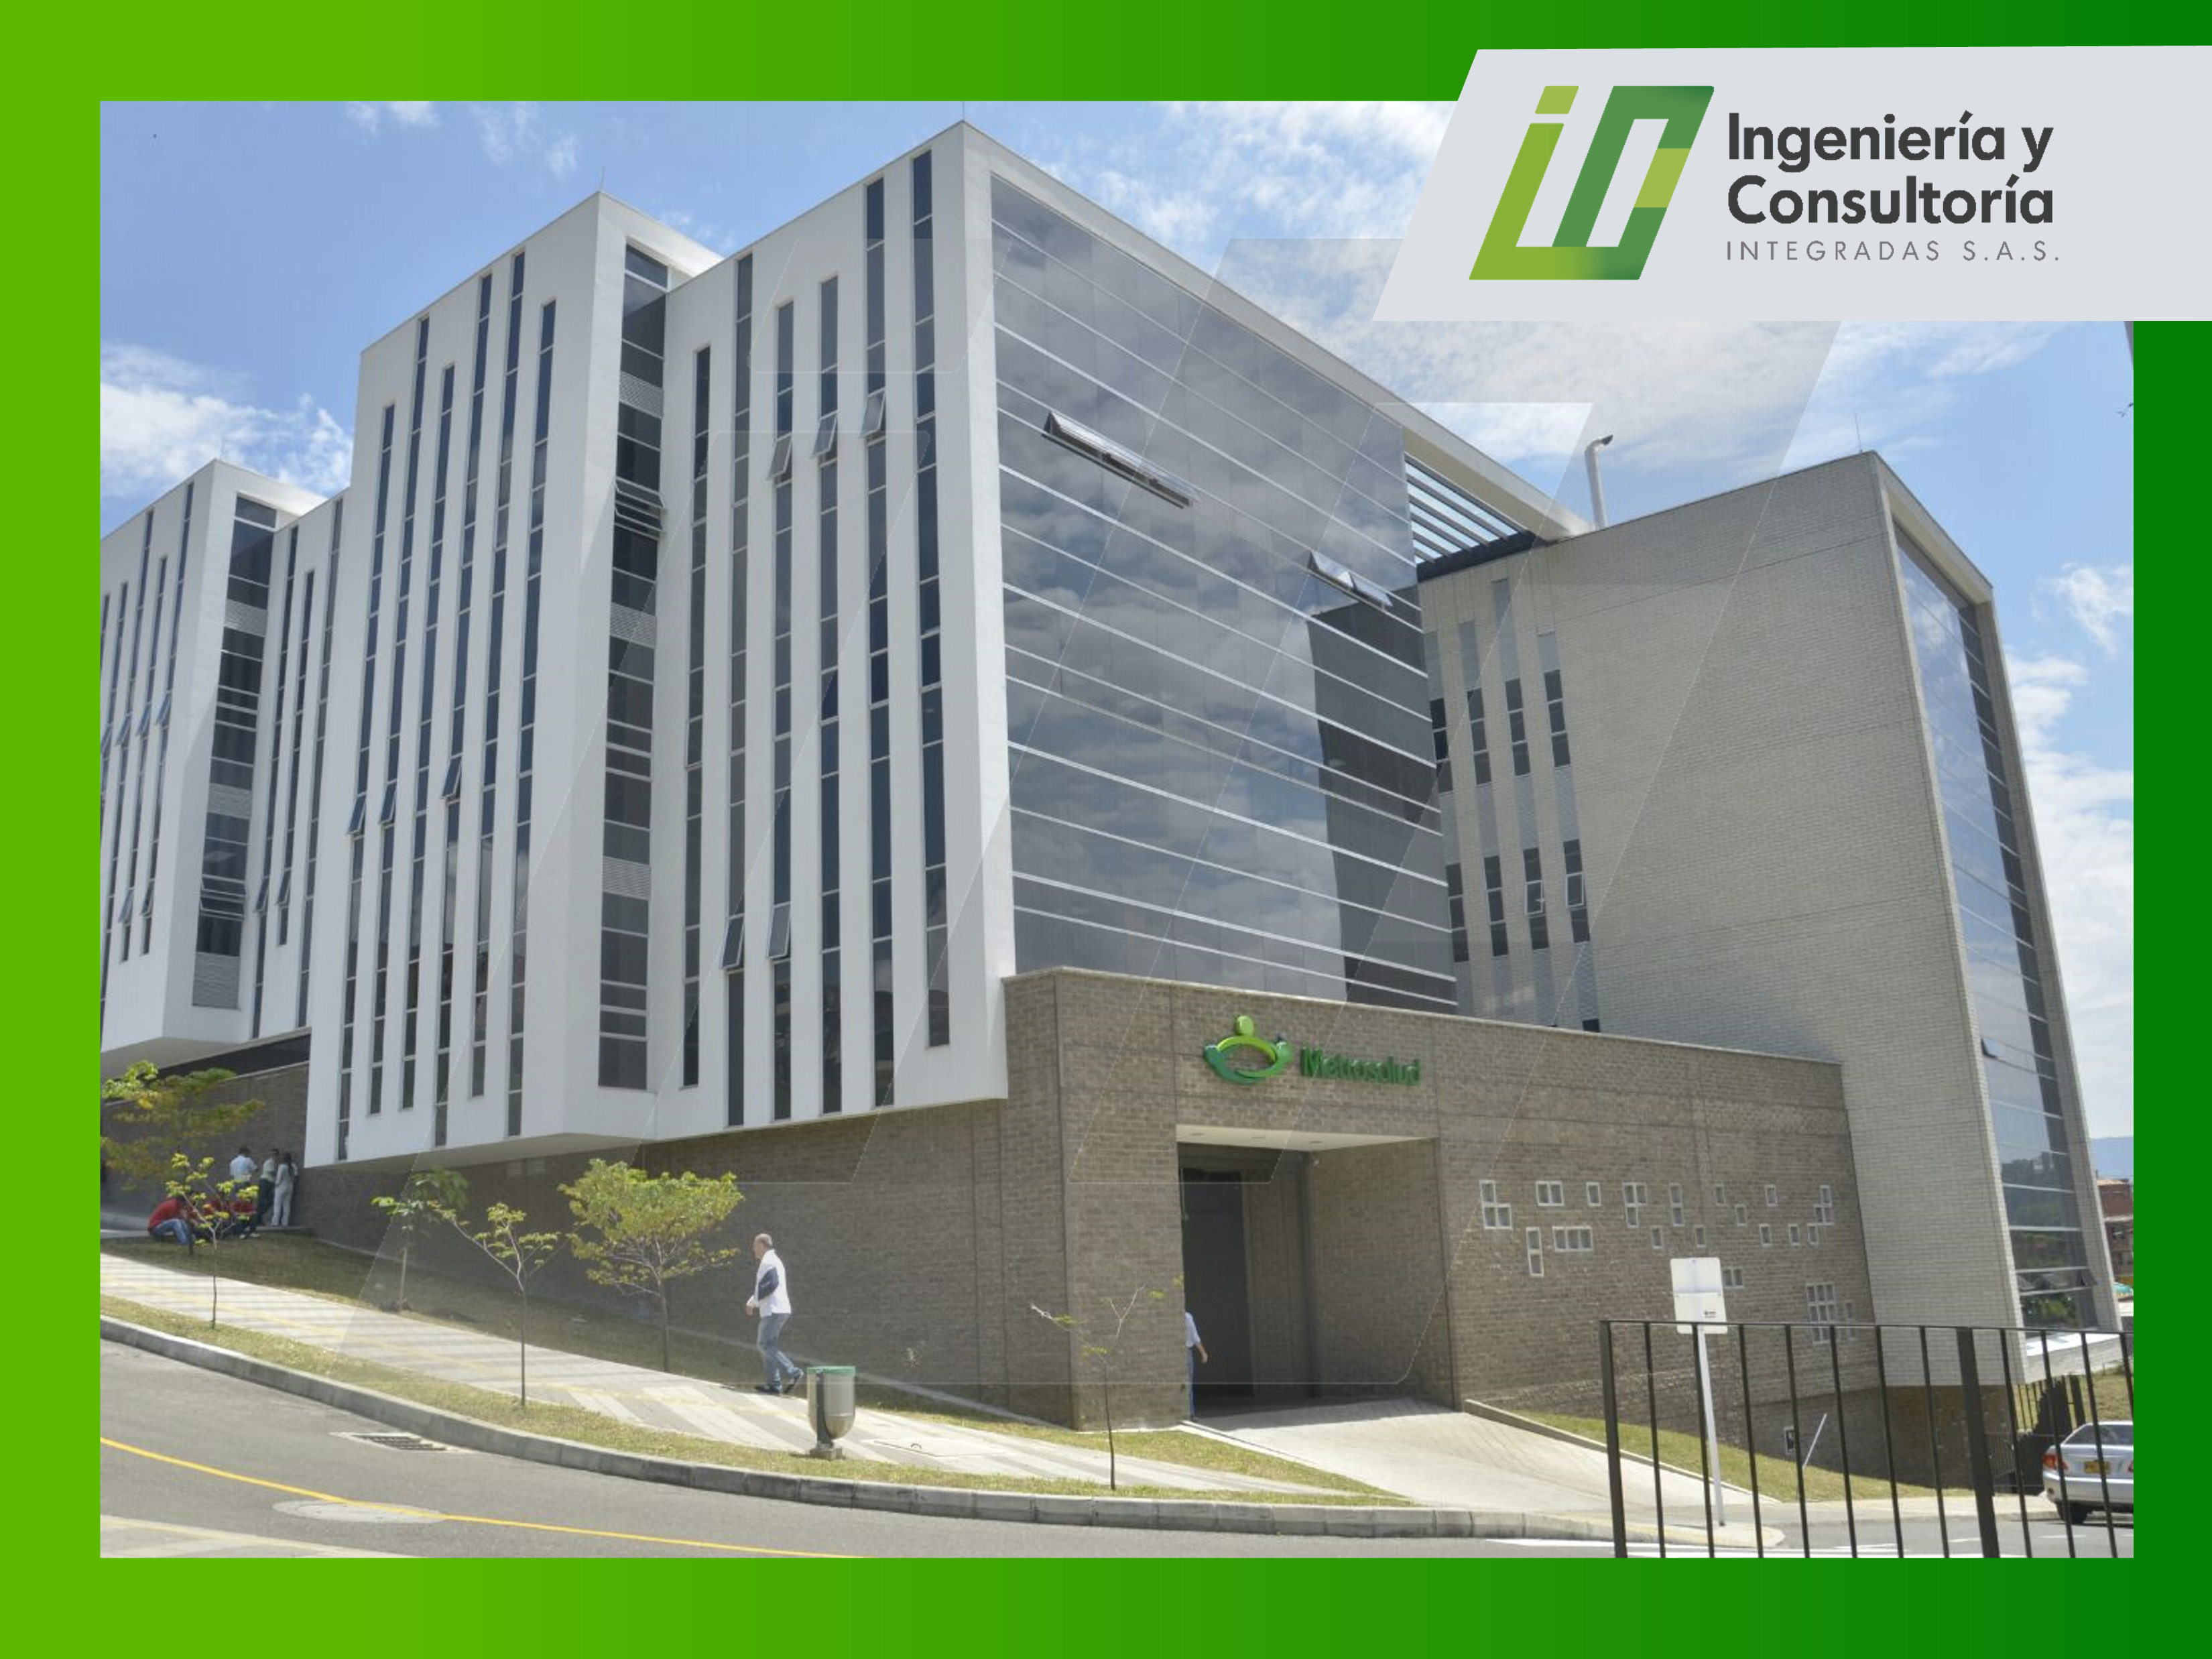 Diseño en estructura en sistema liviano en el hospital San Cristobal, uso institucional.